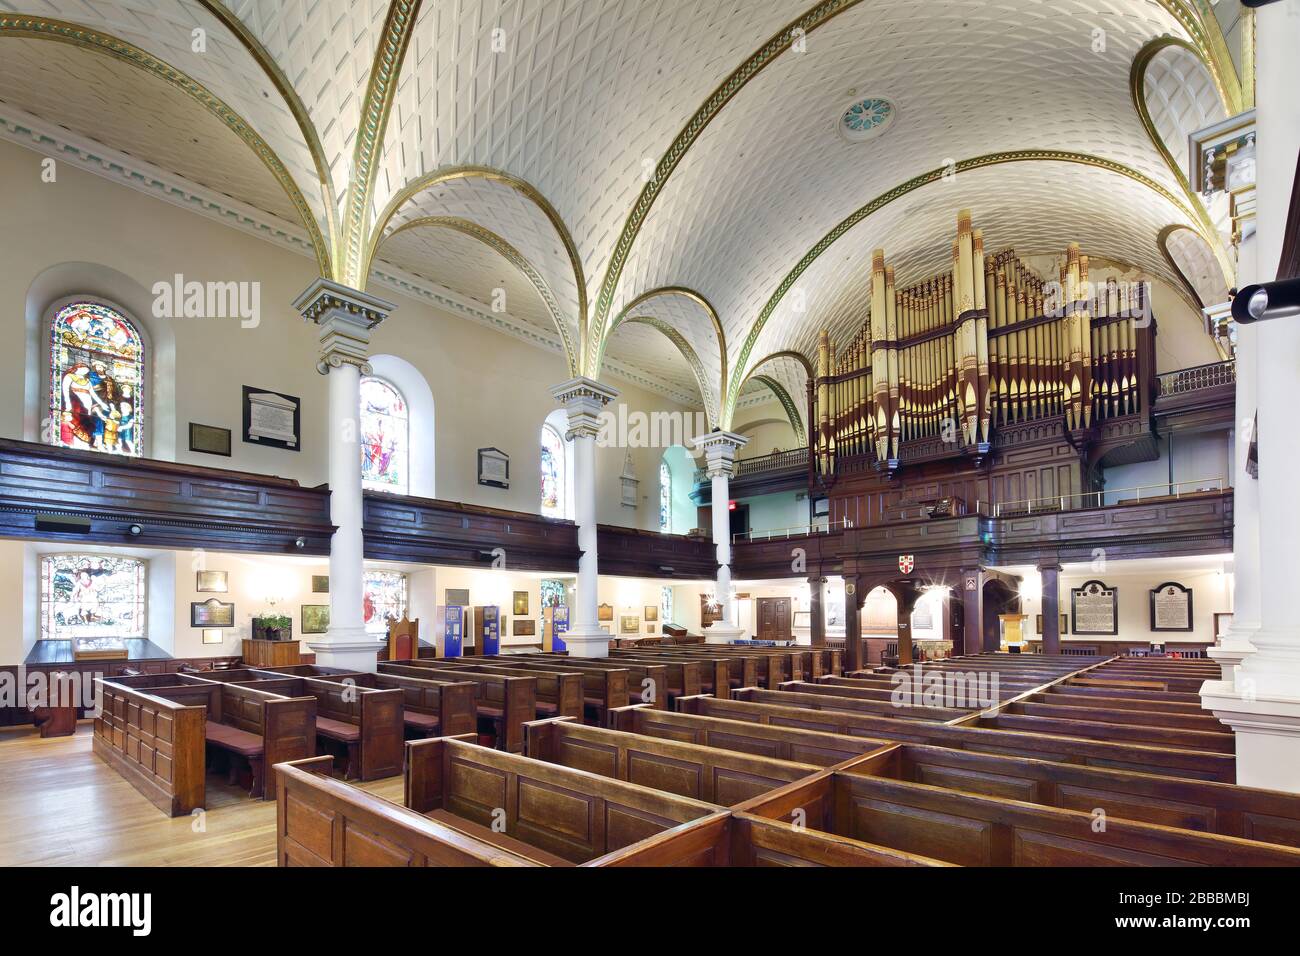 Nave y galería sobre la que se encuentra un órgano Casavant en la Catedral de la Santísima Trinidad, Ciudad de Quebec, Quebec, Canadá Foto de stock